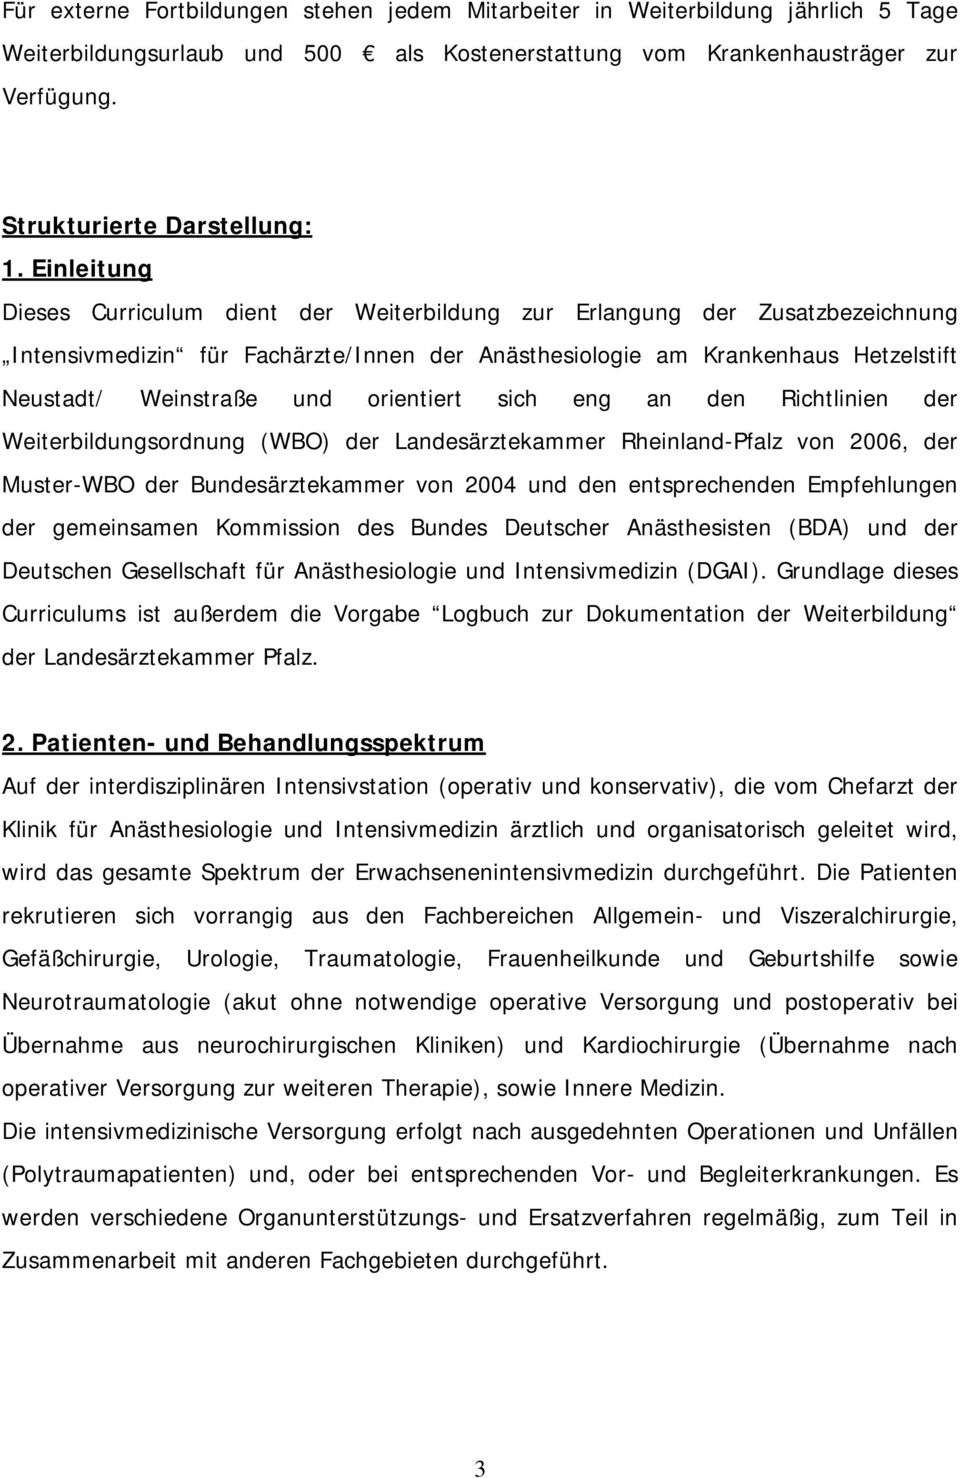 orientiert sich eng an den Richtlinien der Weiterbildungsordnung (WBO) der Landesärztekammer Rheinland-Pfalz von 2006, der Muster-WBO der Bundesärztekammer von 2004 und den entsprechenden